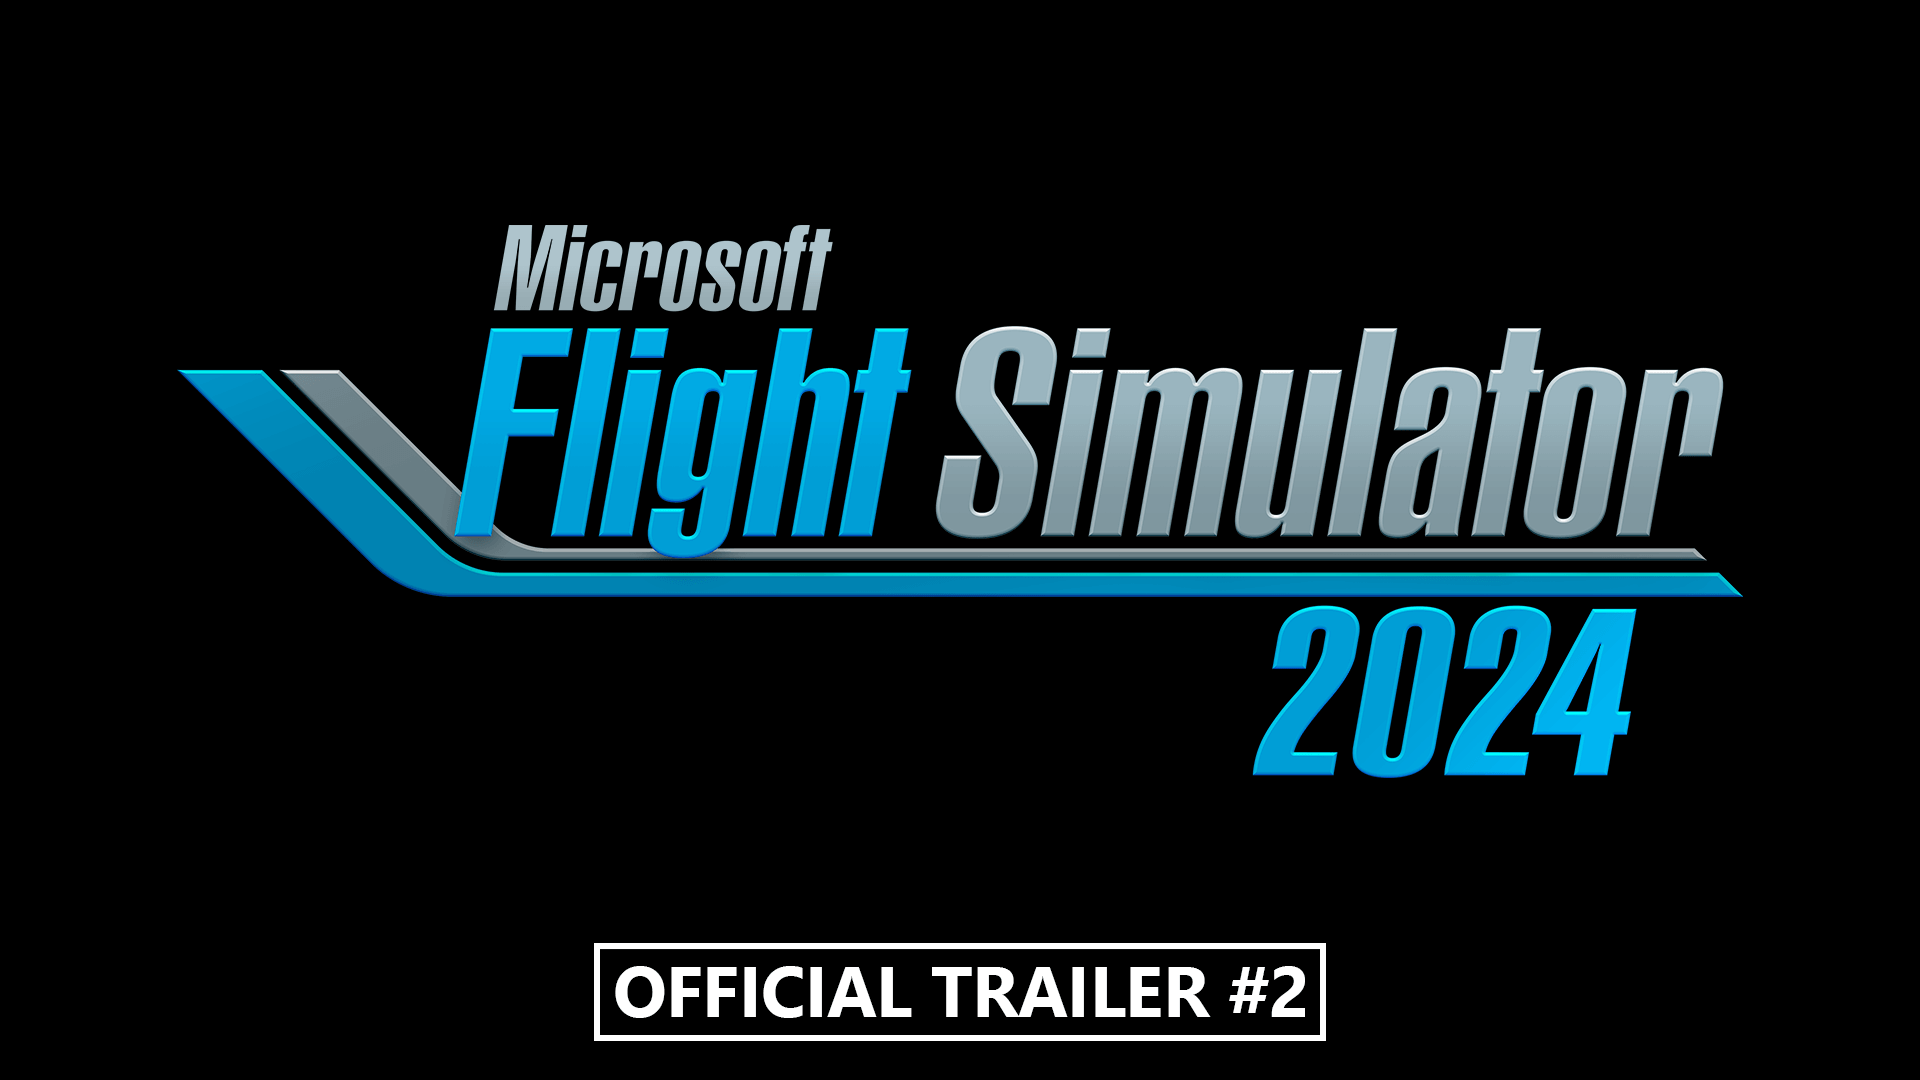 Microsoft Flight Simulator Microsoft Flight Simulator 2024 Official Trailer #2 Video Still